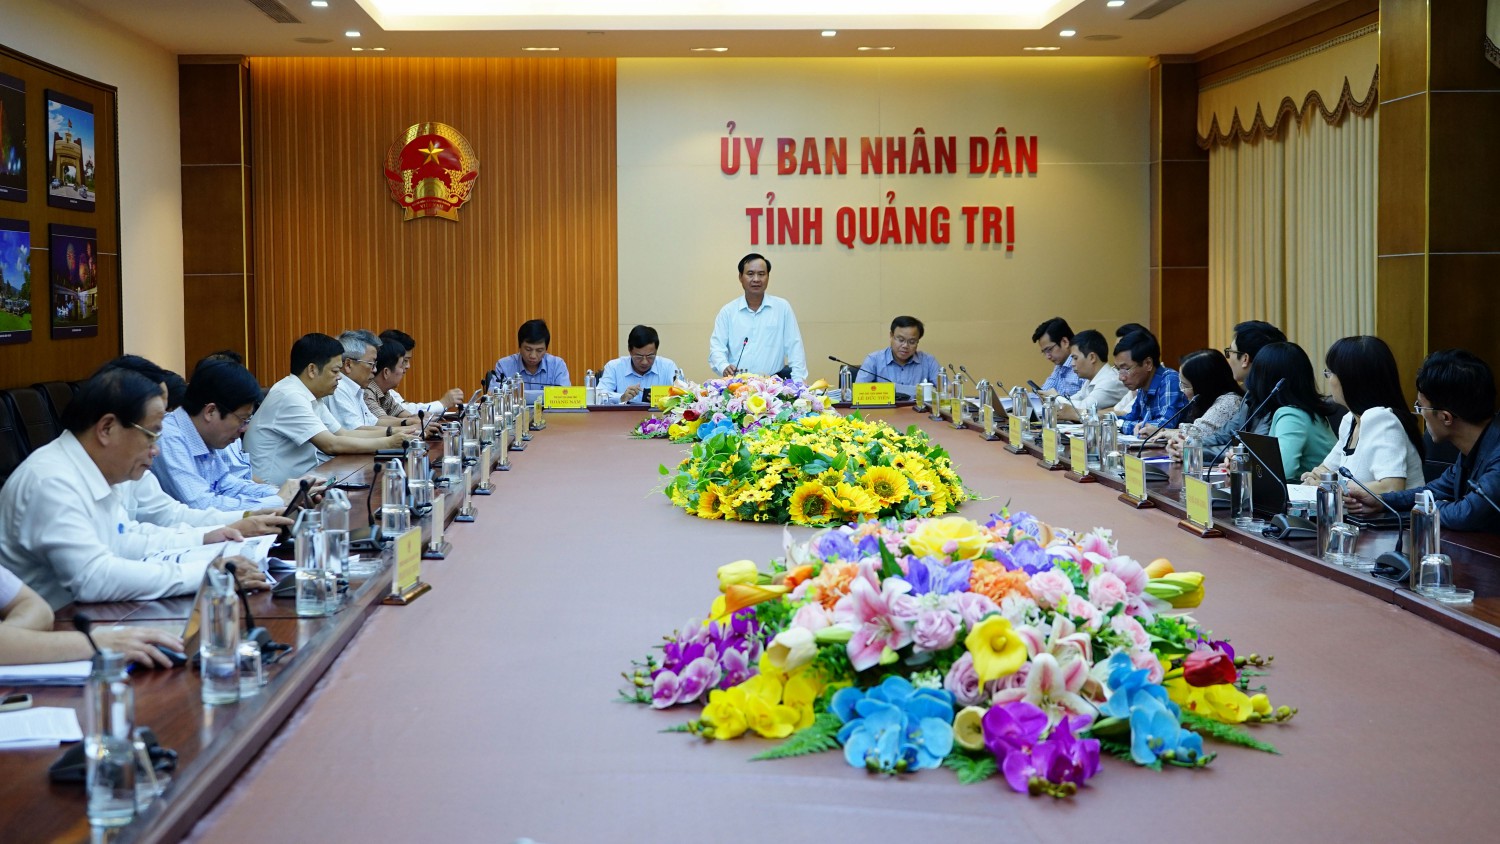 Chủ tịch UBND tỉnh Võ Văn Hưng đề nghị các đơn vị tư vấn, phản biện trong quá trình xây dựng quy hoạch tỉnh phải đặc biệt chú trọng đến những ưu thế riêng có mà tỉnh đang sở hữu